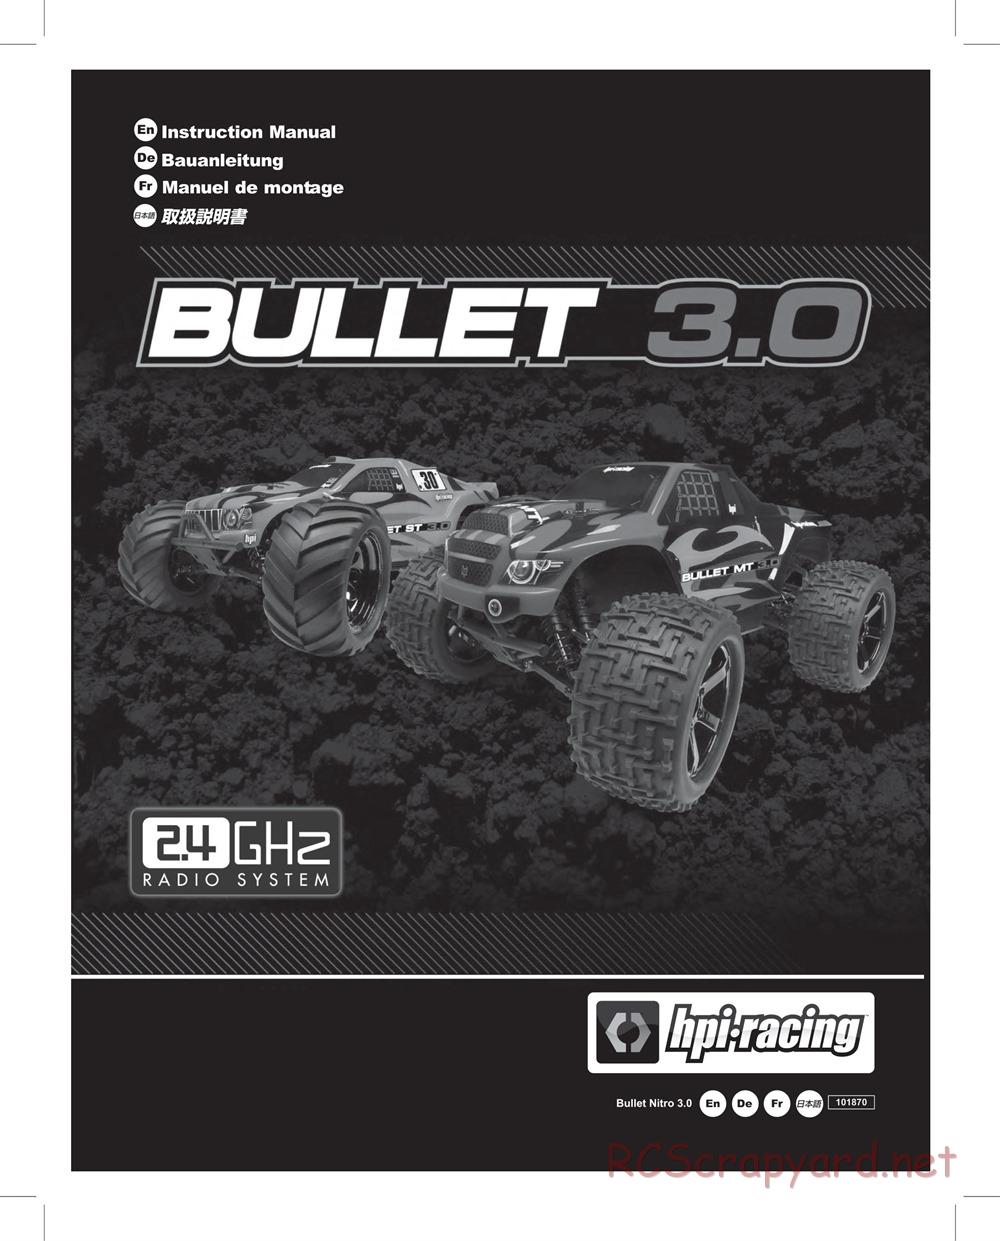 HPI - Bullet MT 3.0 - Manual - Page 1